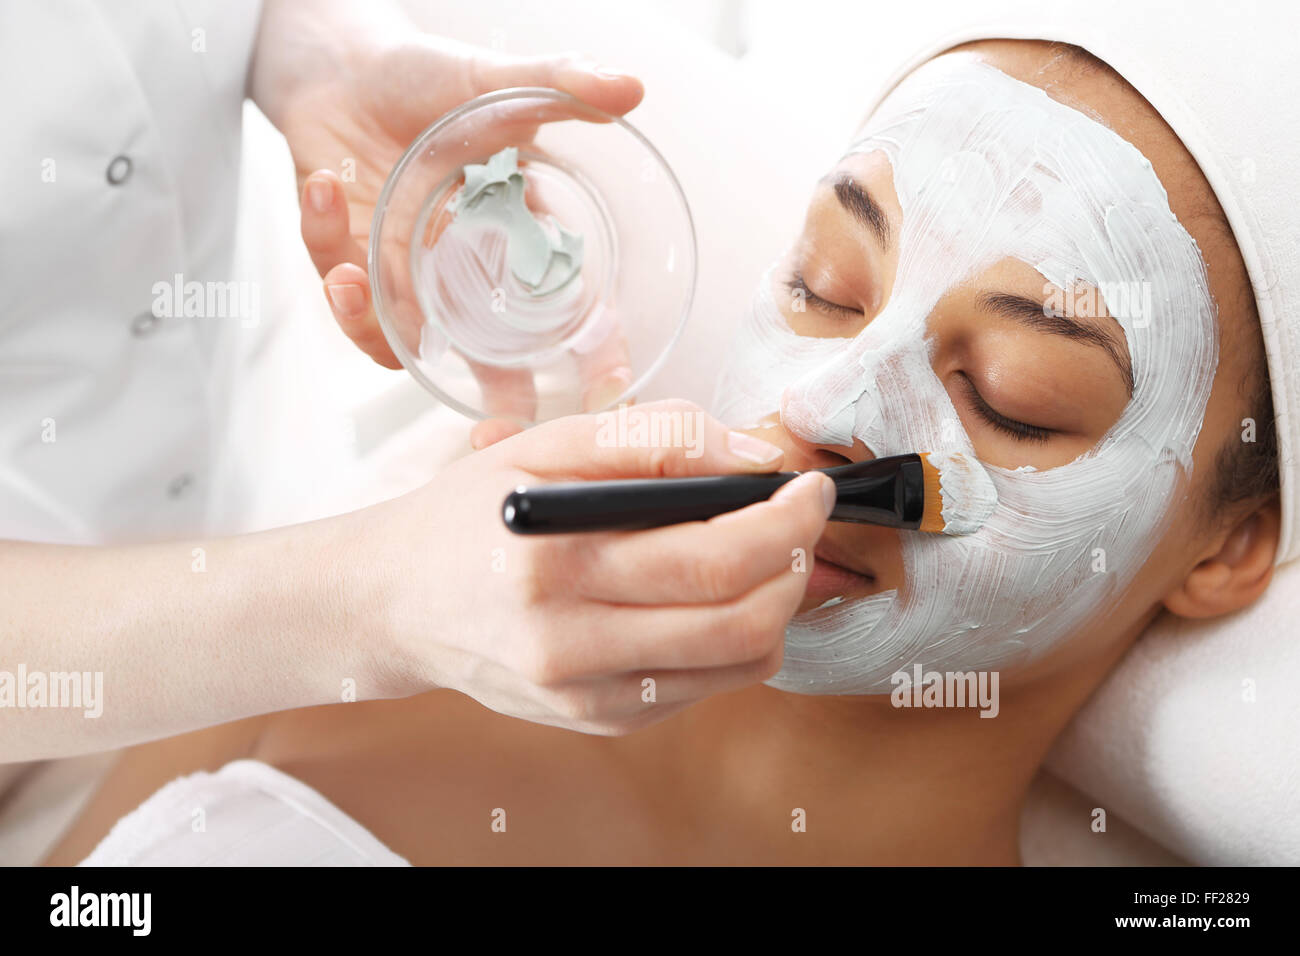 Masque hydratant cosmétique est appliquée sur le visage d'une femme.. Masque nettoyant, masque avec l'argile verte, vous détendre dans le spa Banque D'Images